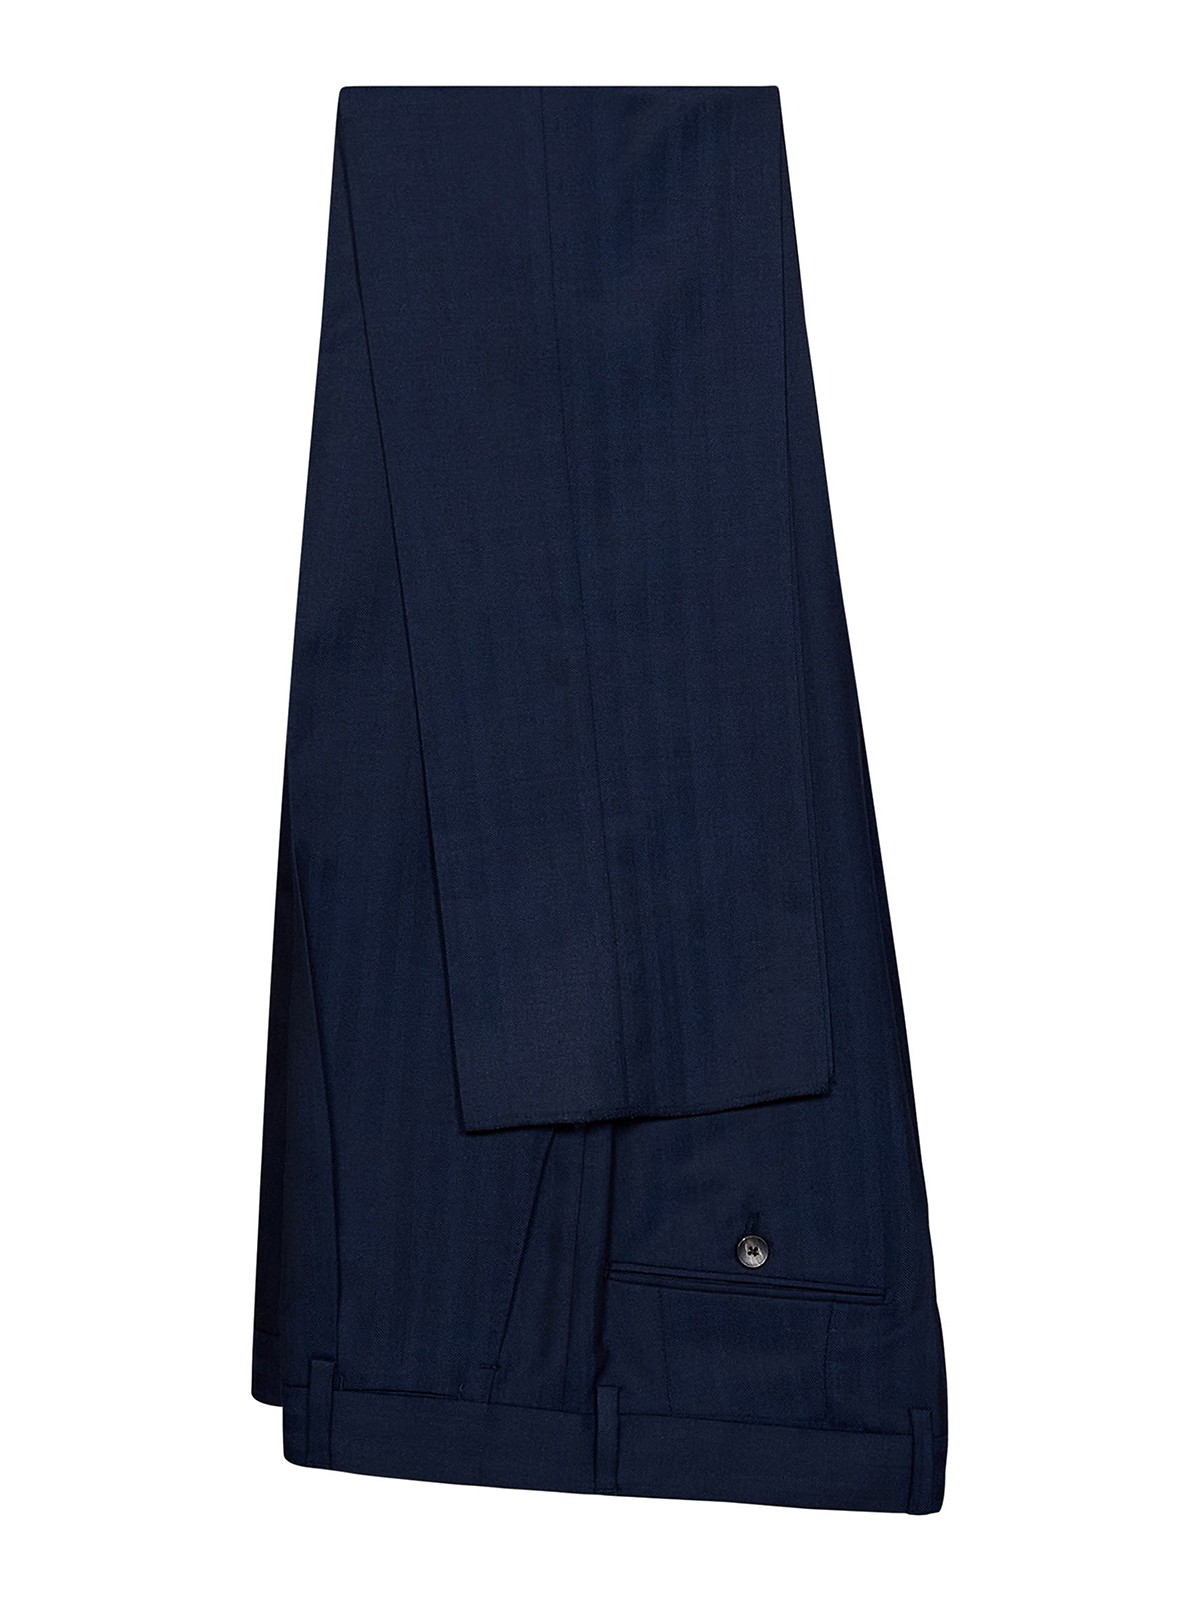 Formal suits Lardini - Navy blue suit - EP449AVEPSS60407850BL | iKRIX.com